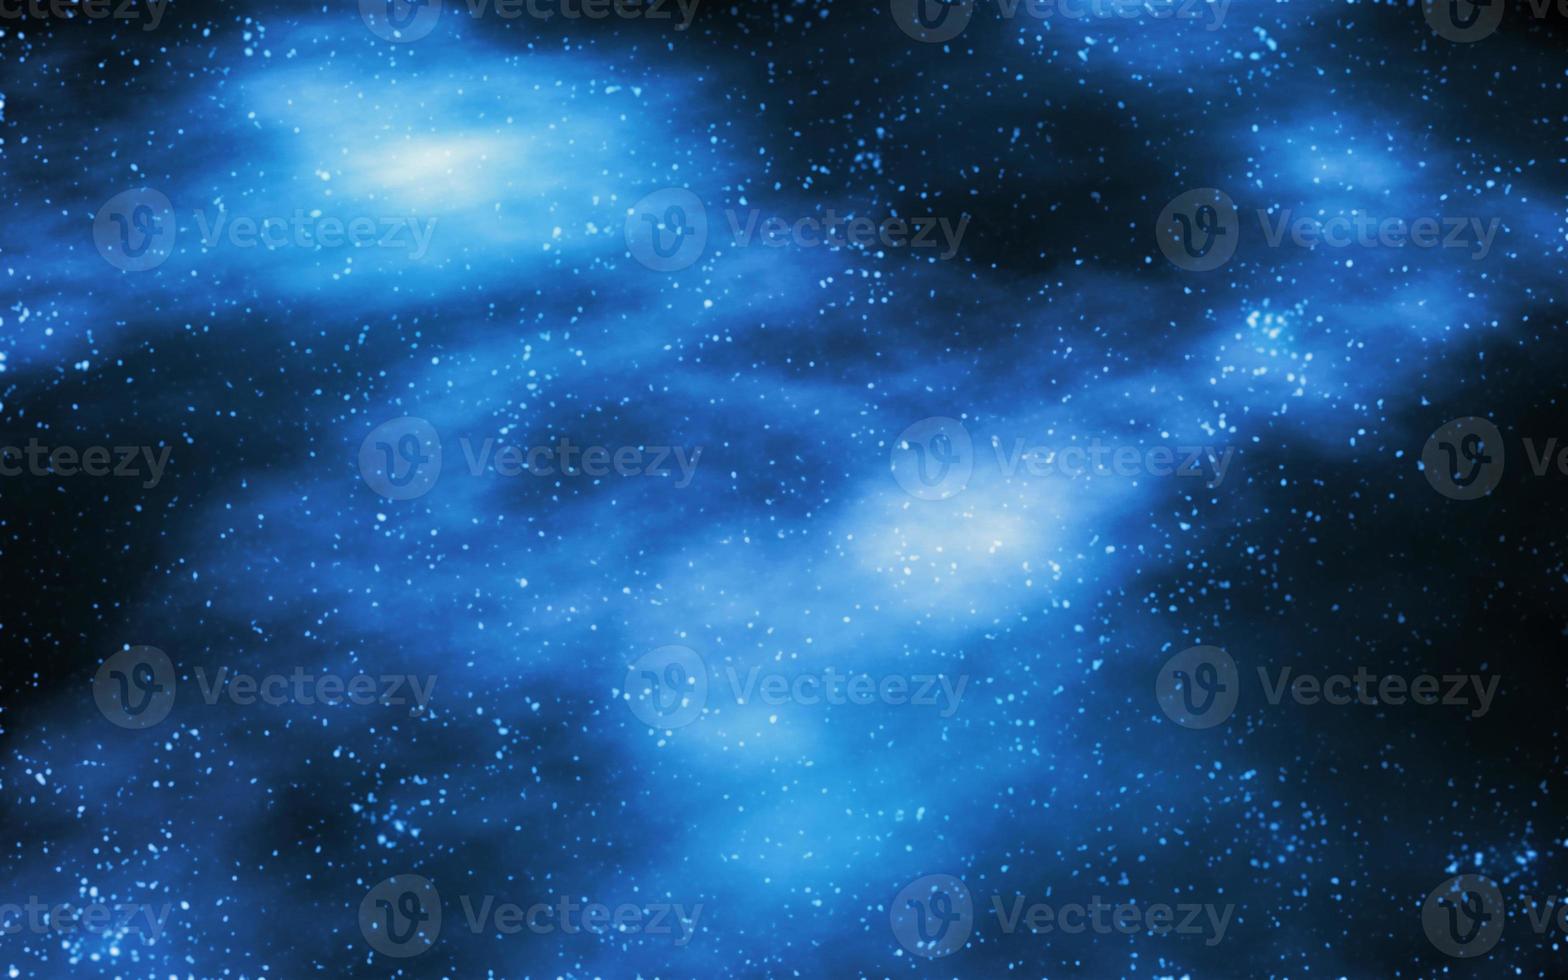 Stars and nebula space illustration background photo